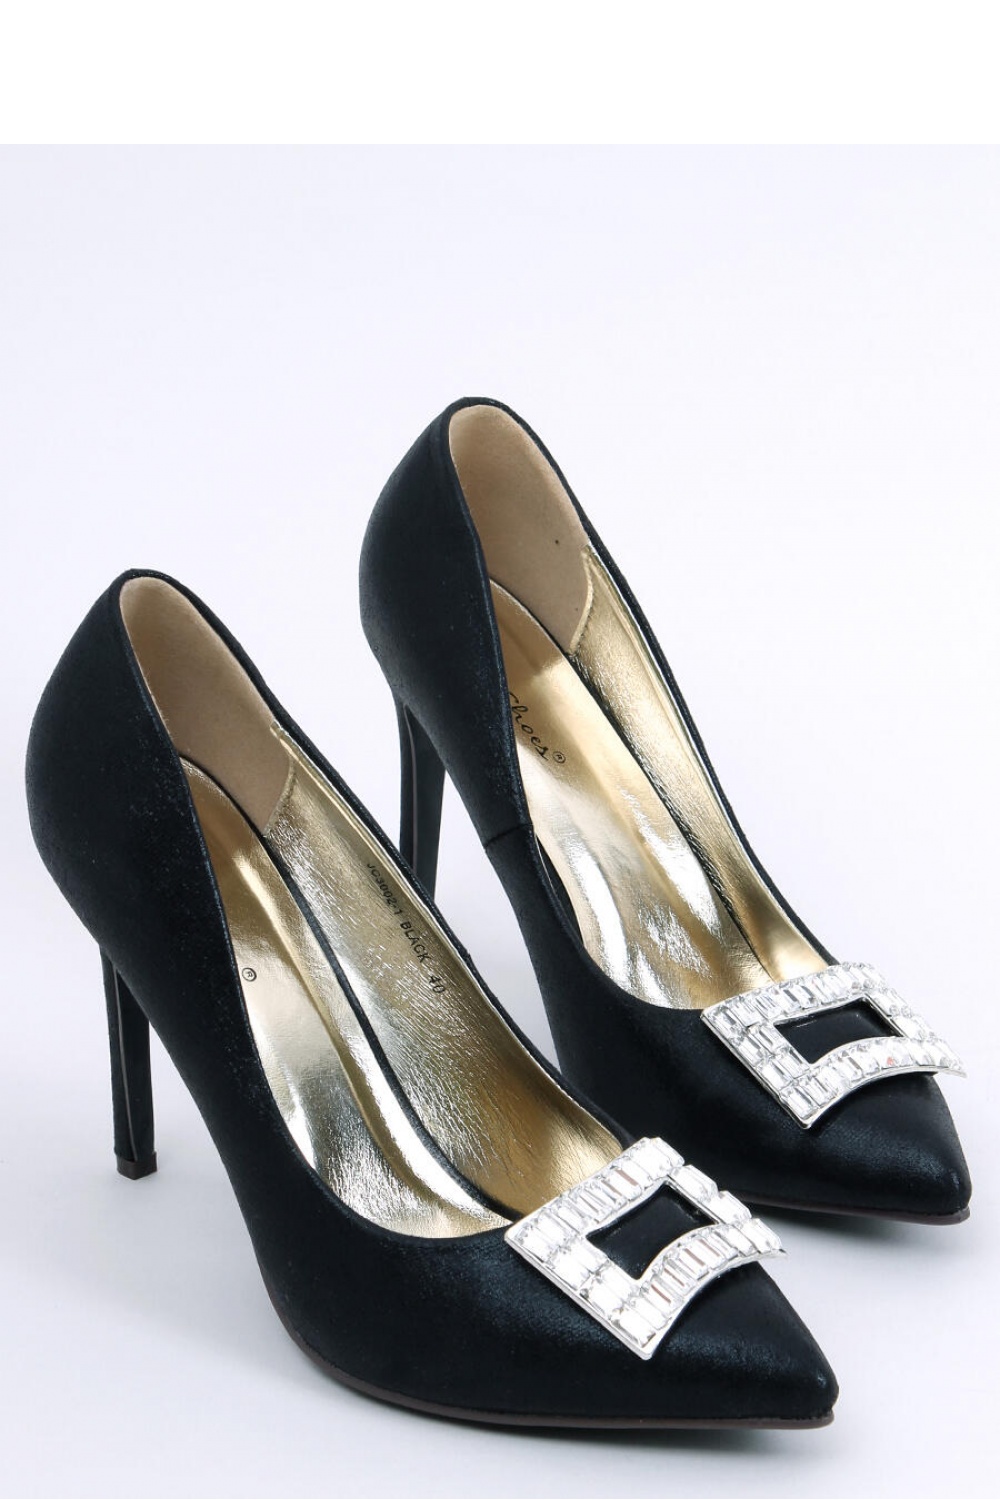 High heels model 174095 Inello